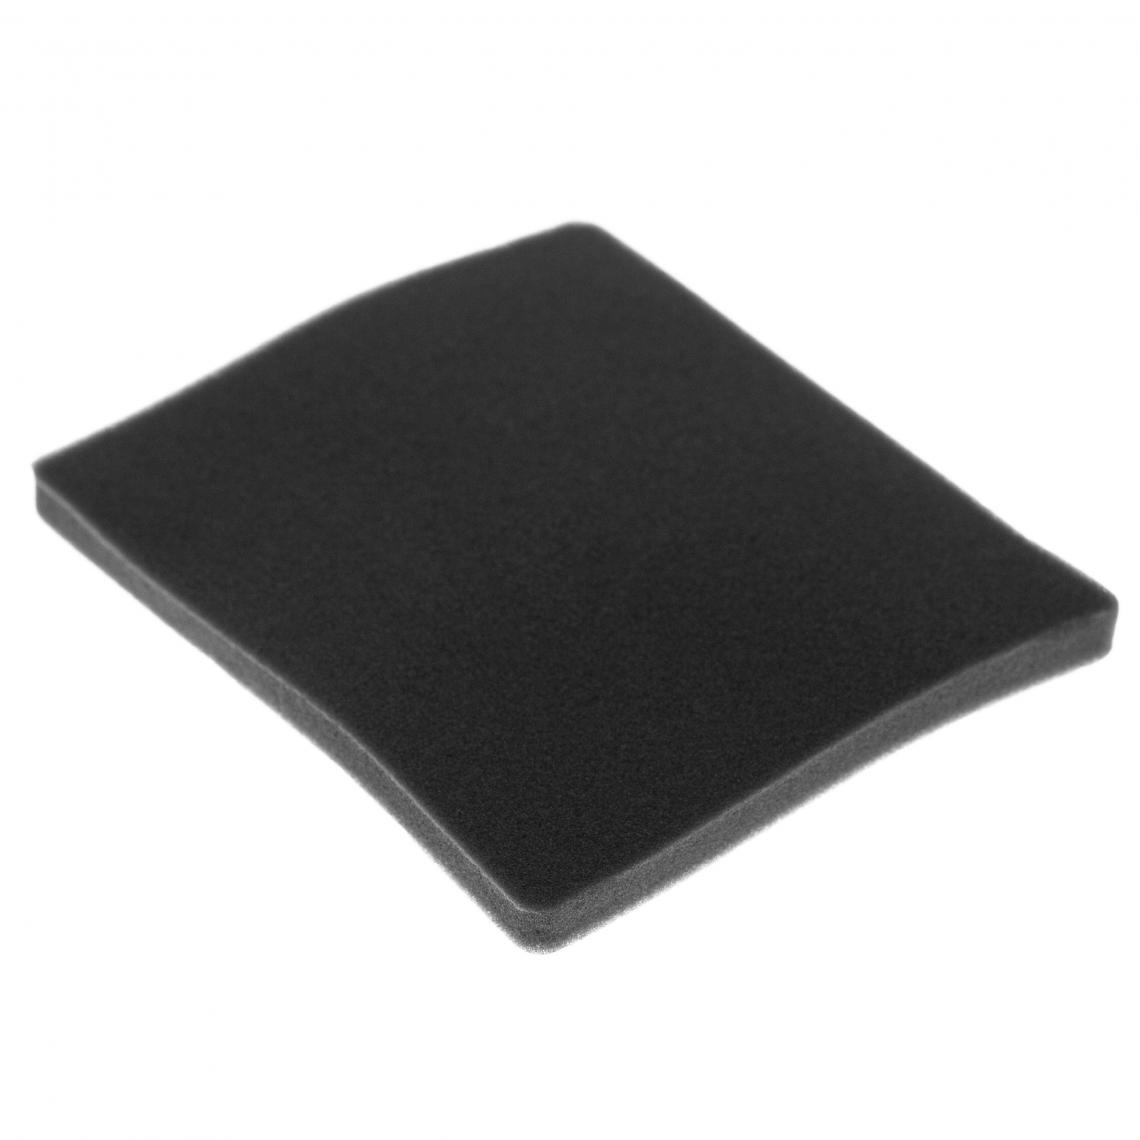 Vhbw - vhbw Filtre compatible avec Electrolux ZCX6206 (910286688) aspirateur - filtre de sortie d'air (filtre éponge), noir - Accessoire entretien des sols